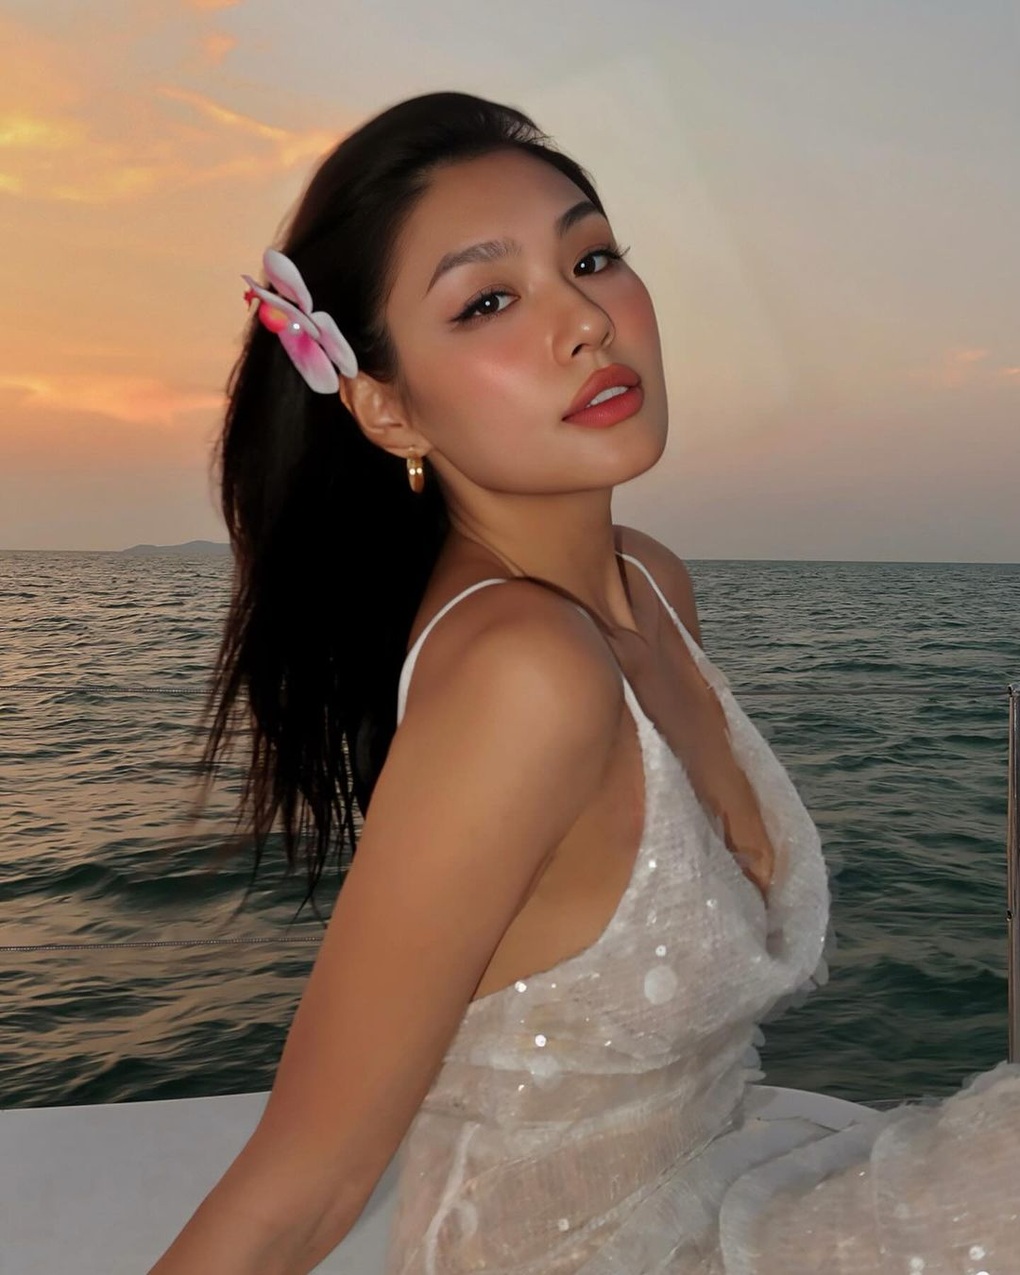 Á hậu Thảo Nhi Lê tuổi 30: Vóc dáng gợi cảm, được gọi là nữ hoàng bikini - 2